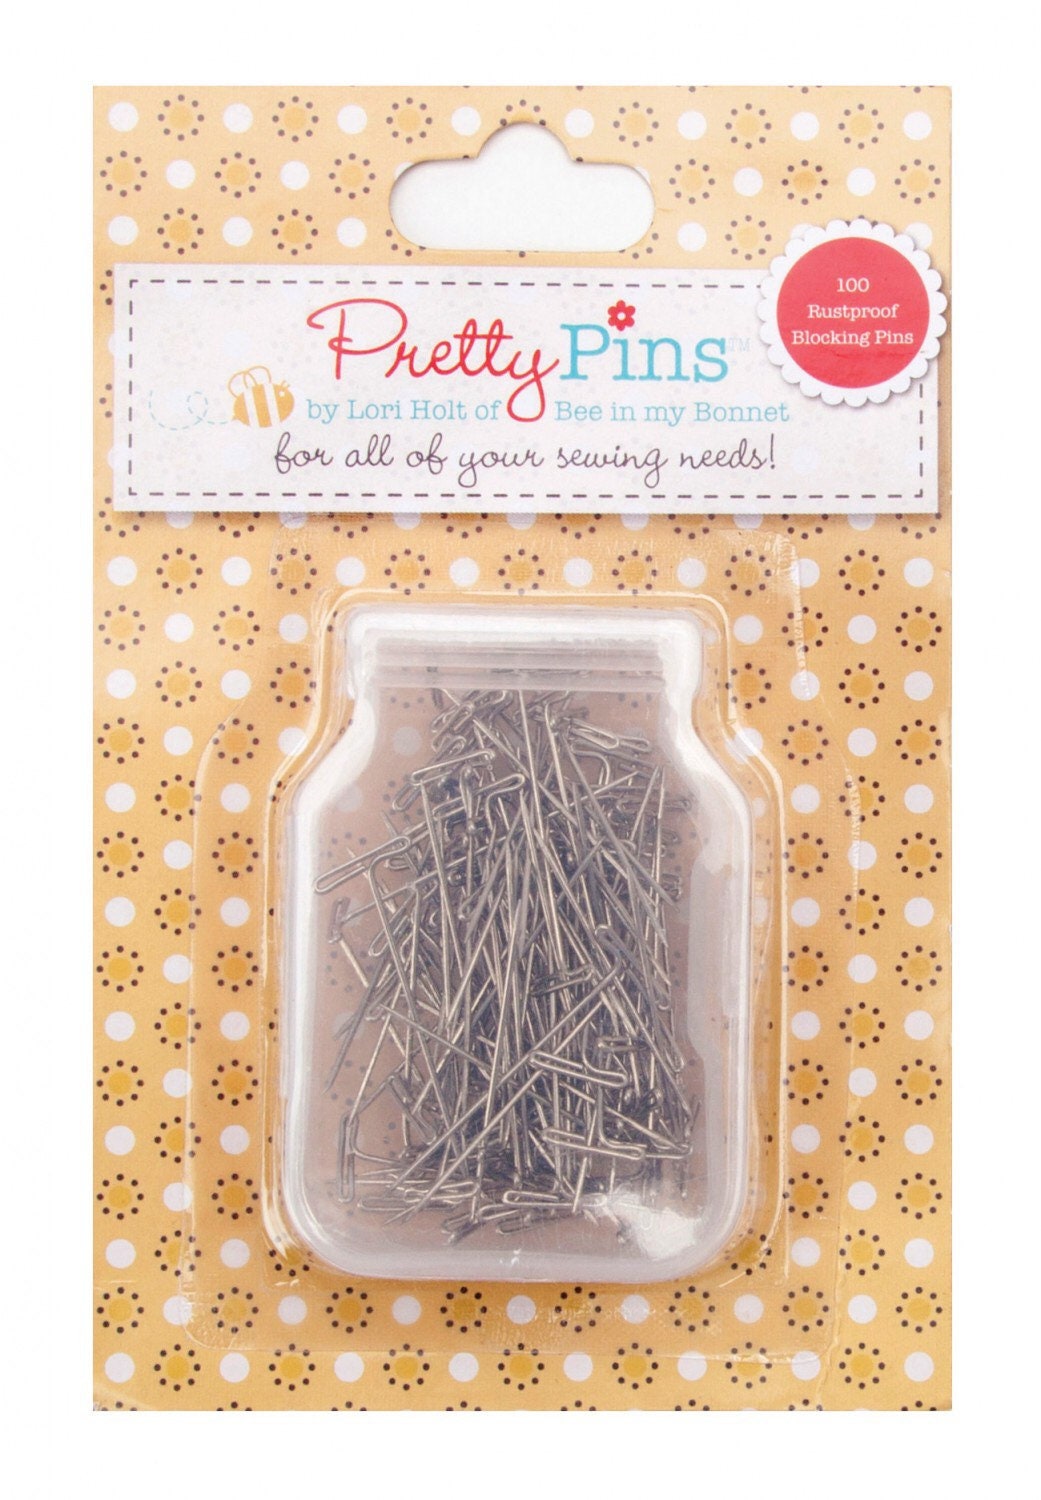 Pretty Pins - Blocking T Pins - Lori Holt - Bee In My Bonnet - 100 Pack - Rustproof